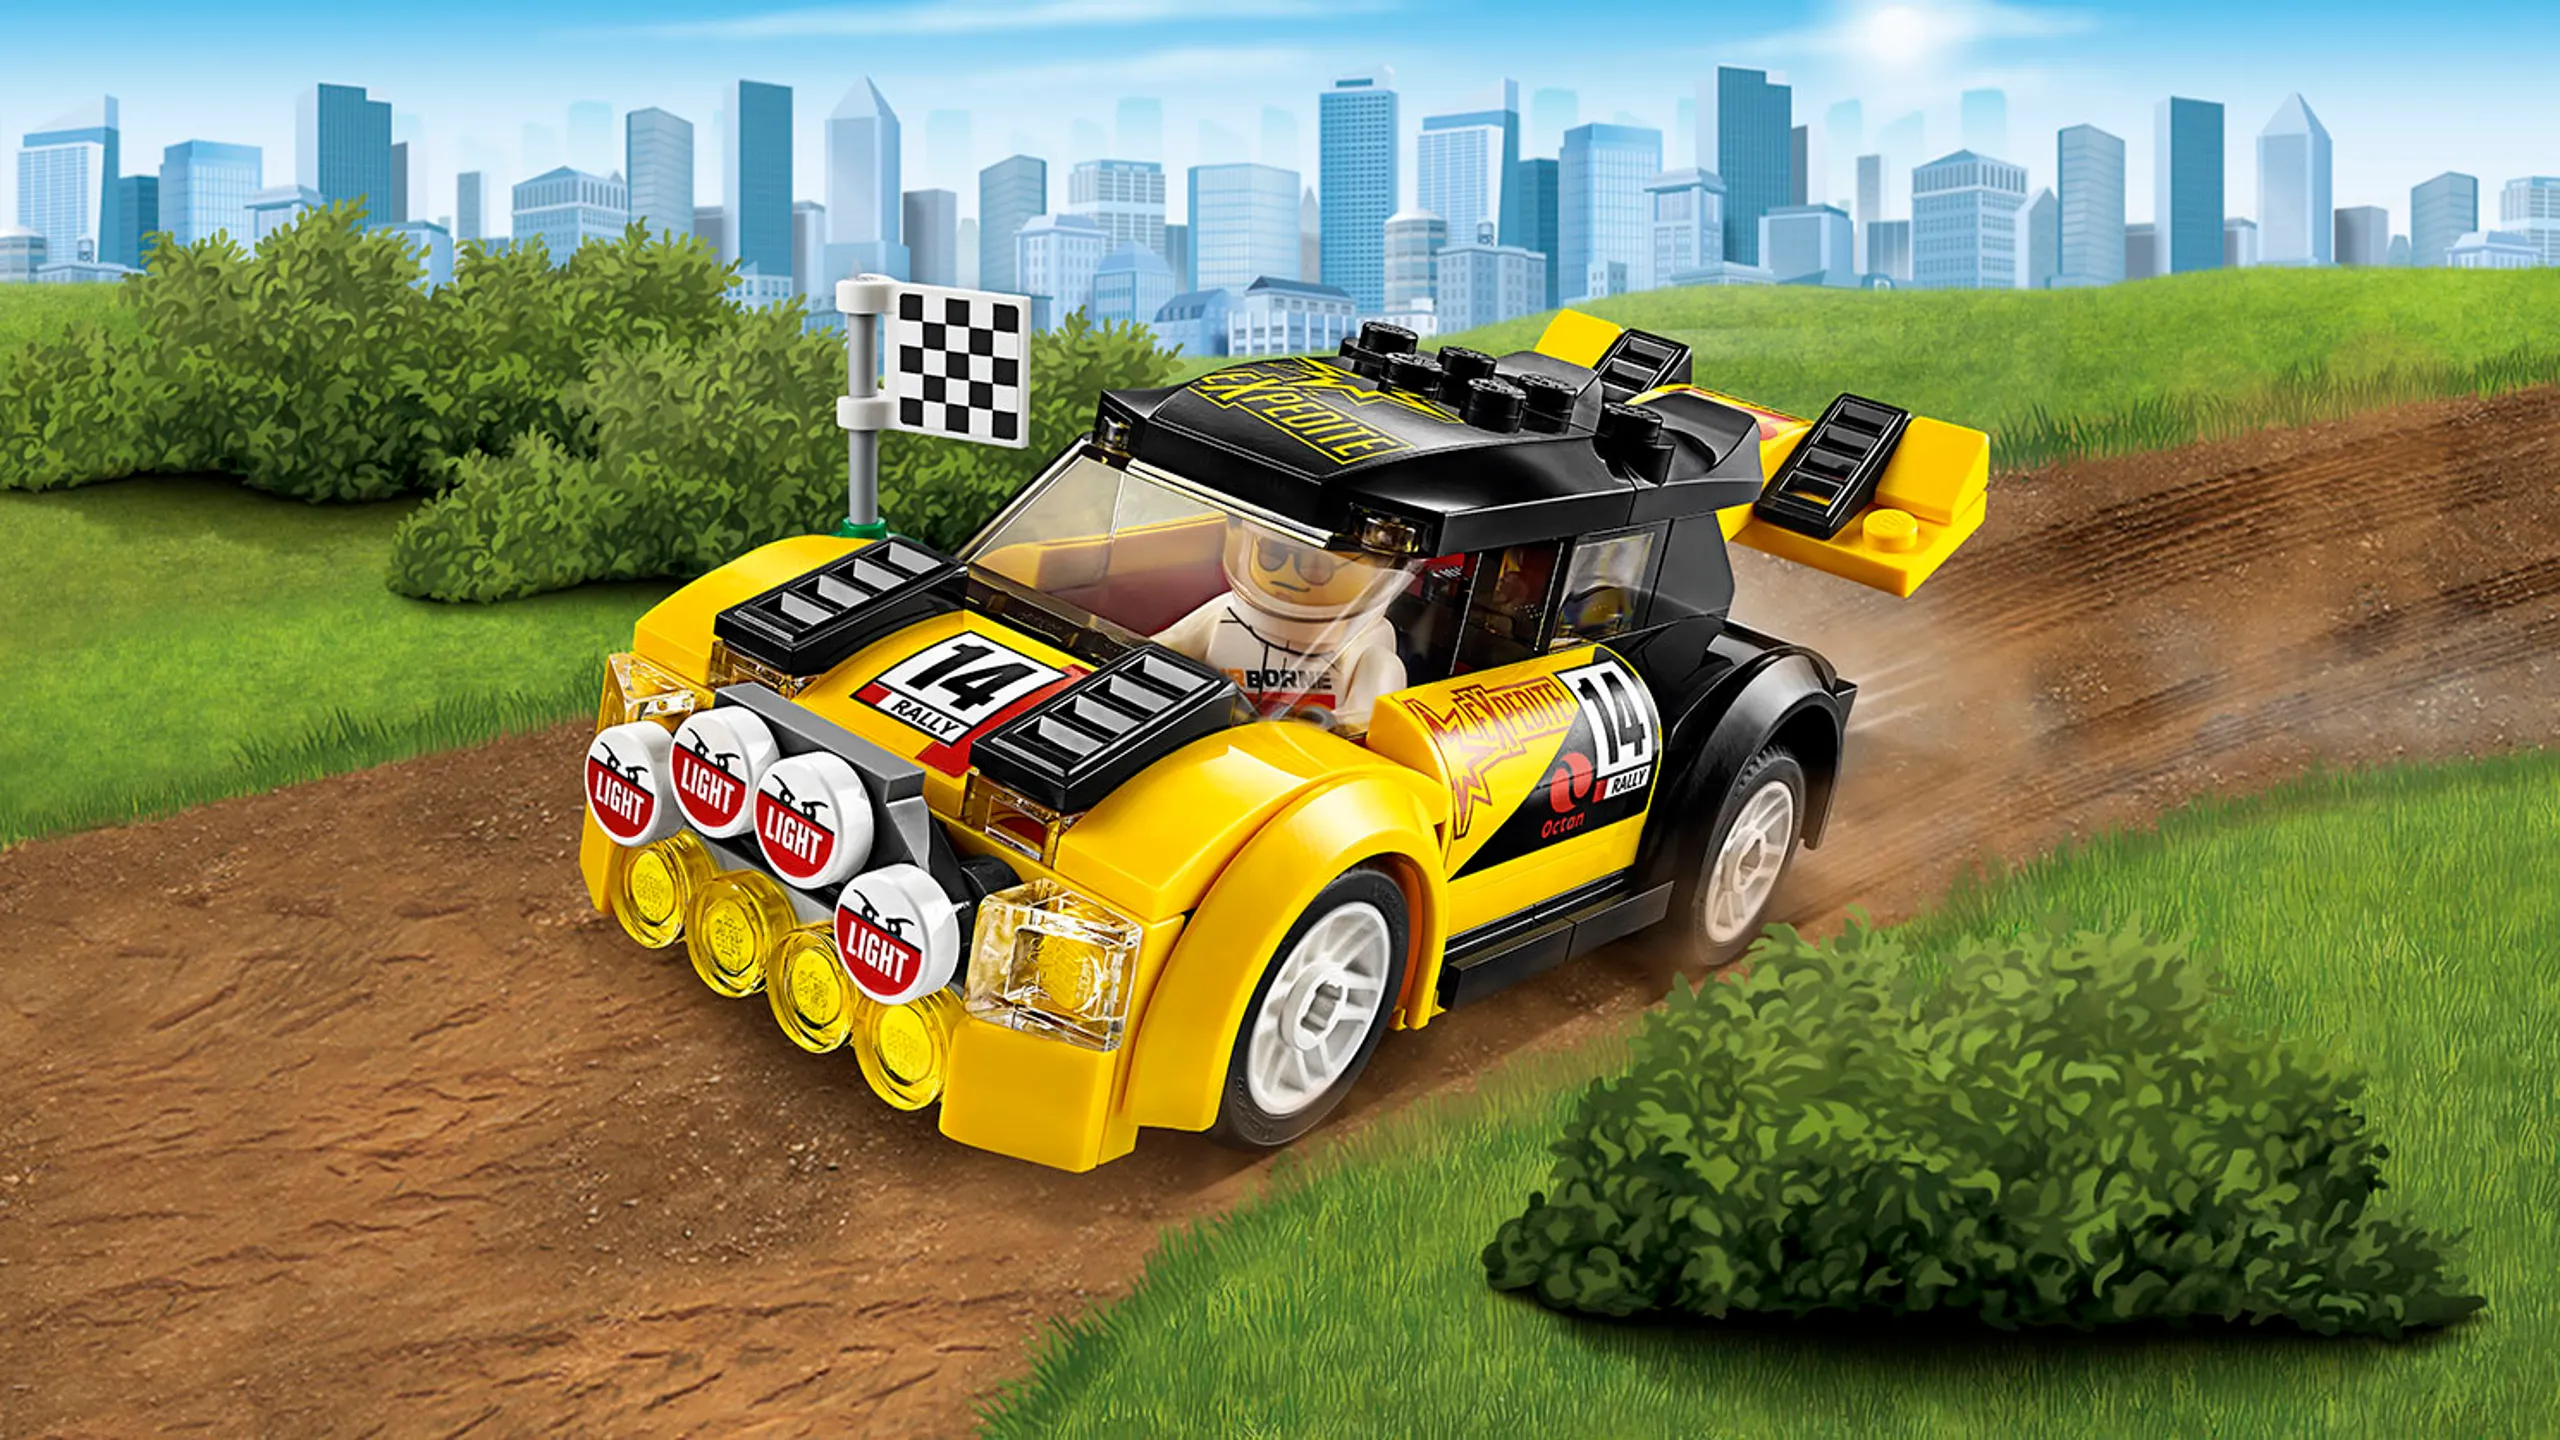 LEGO City Nagyszerű járművek – Rally autó 60113